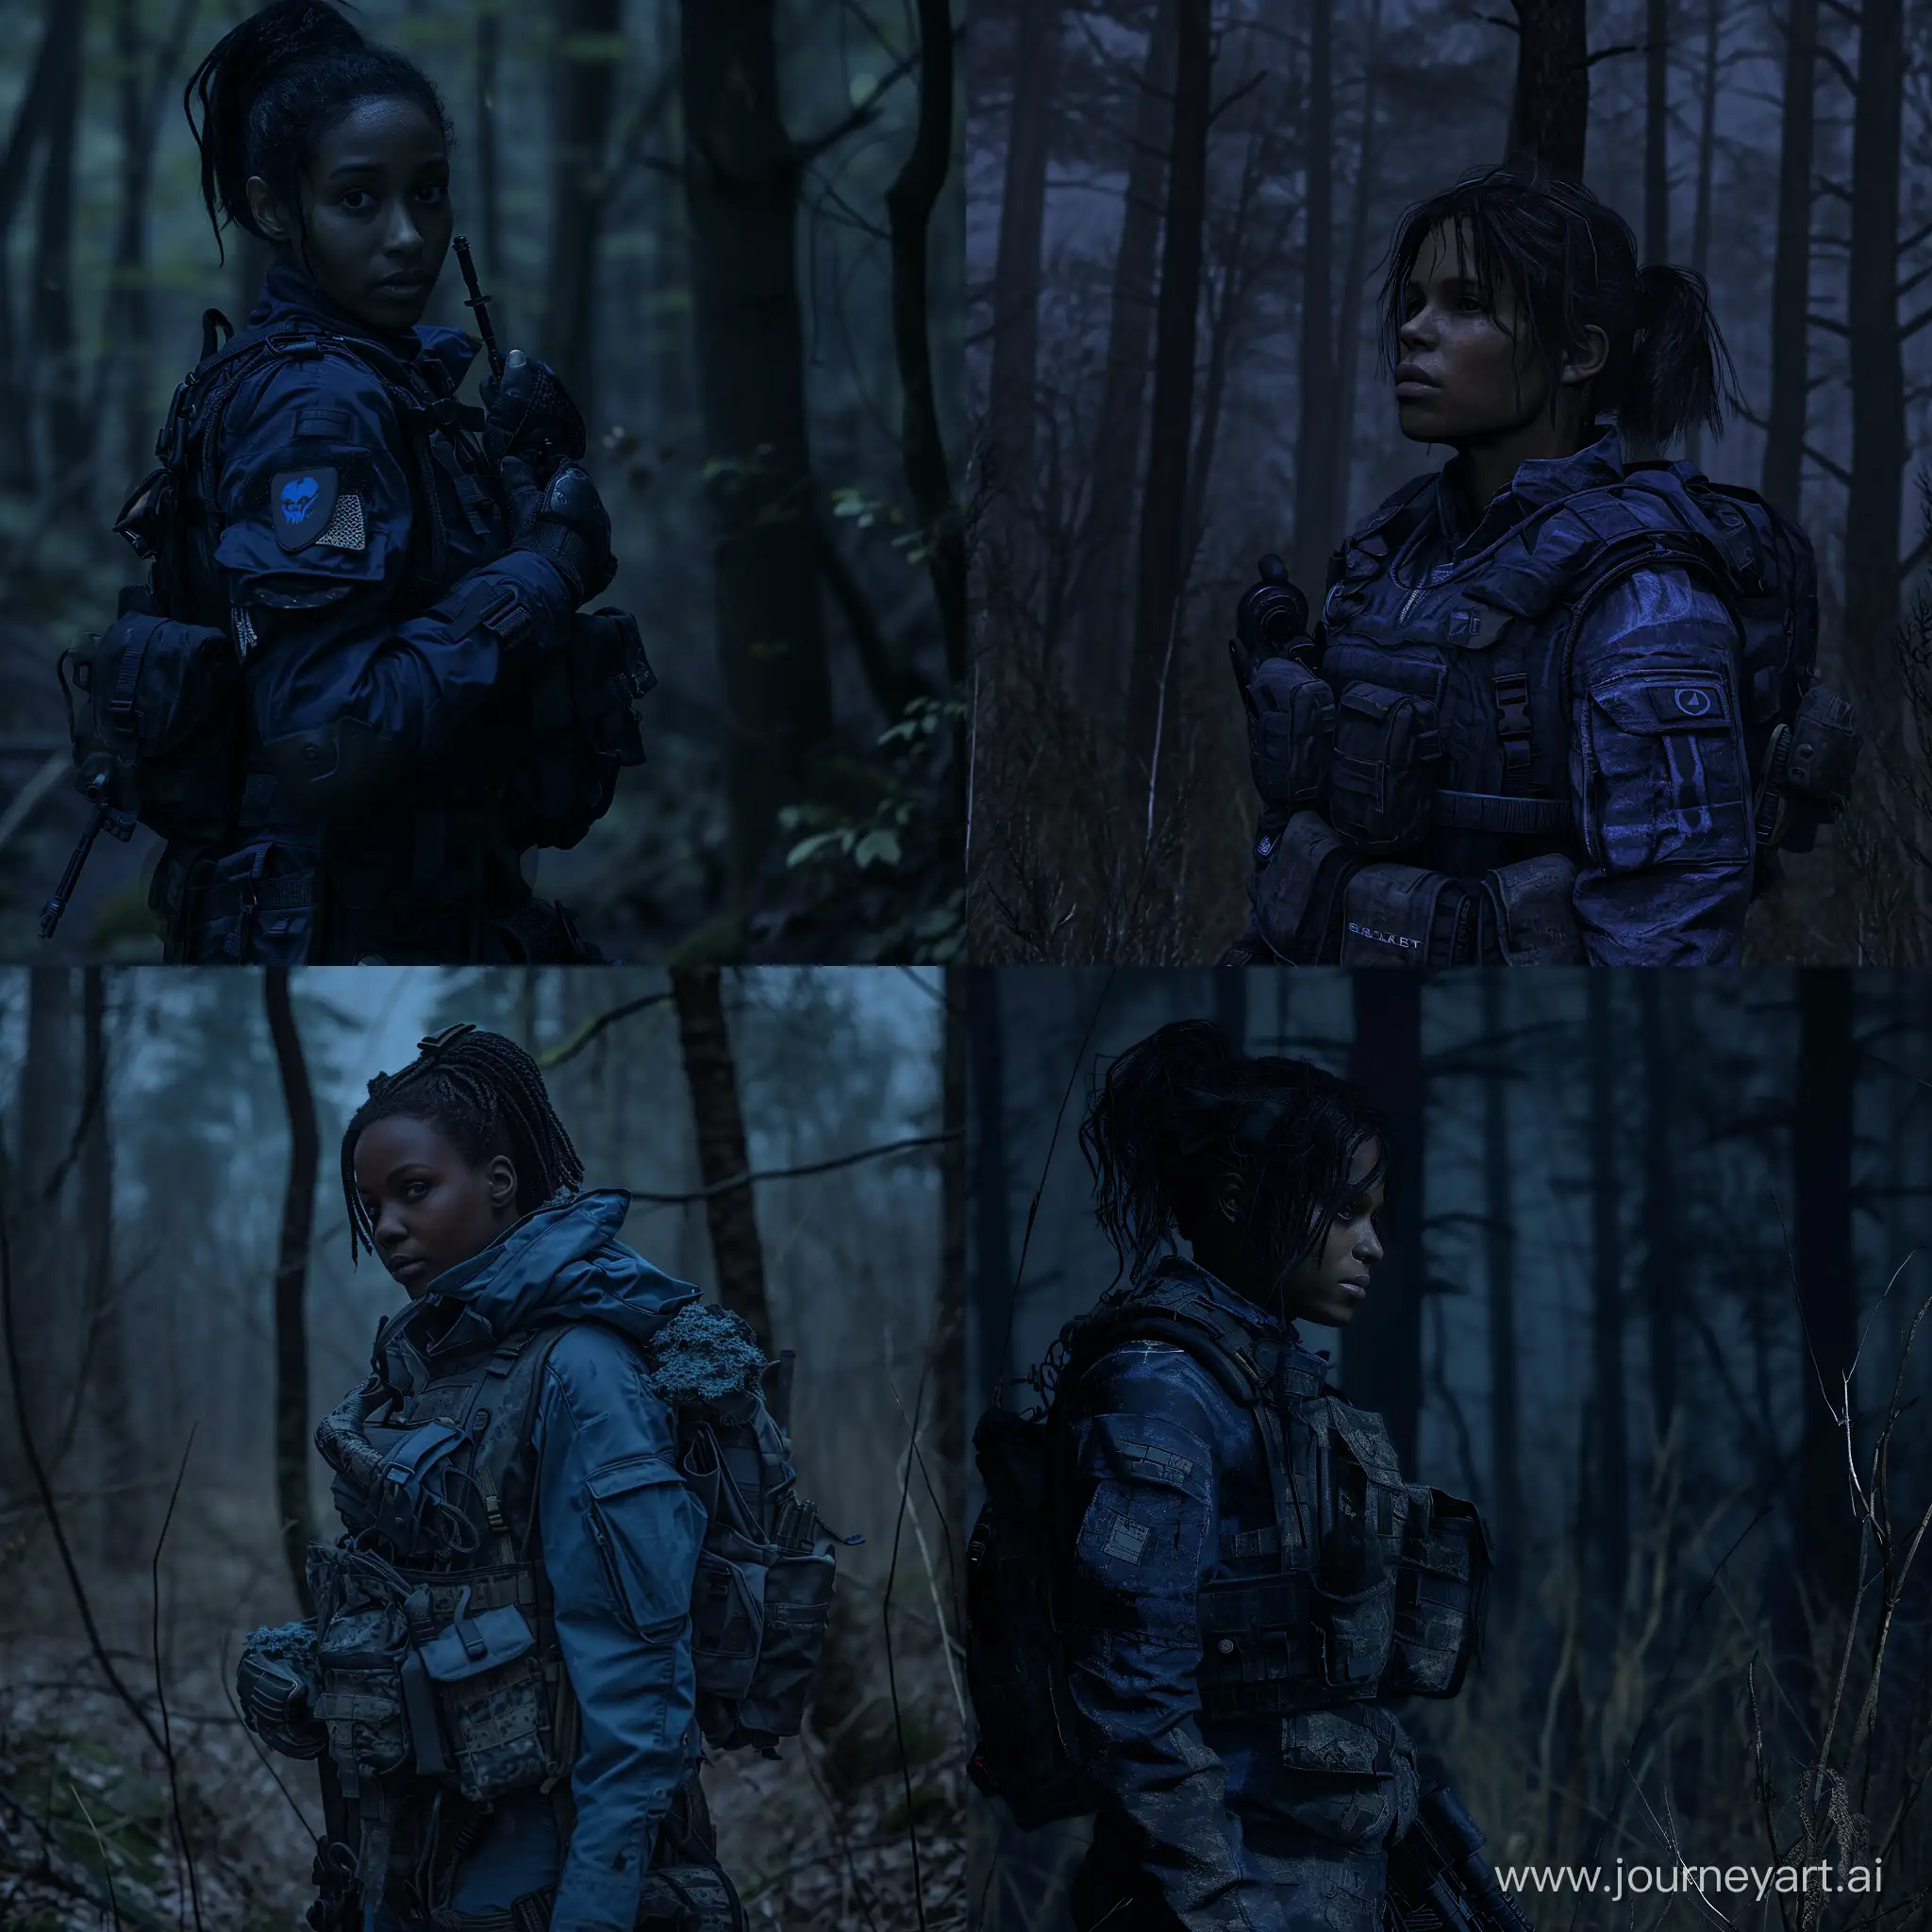 beautiful darkskinned Sheva Alomar in S.T.A.L.K.E.R as mercenary in darkblue tactical equipment dead trees dark forest